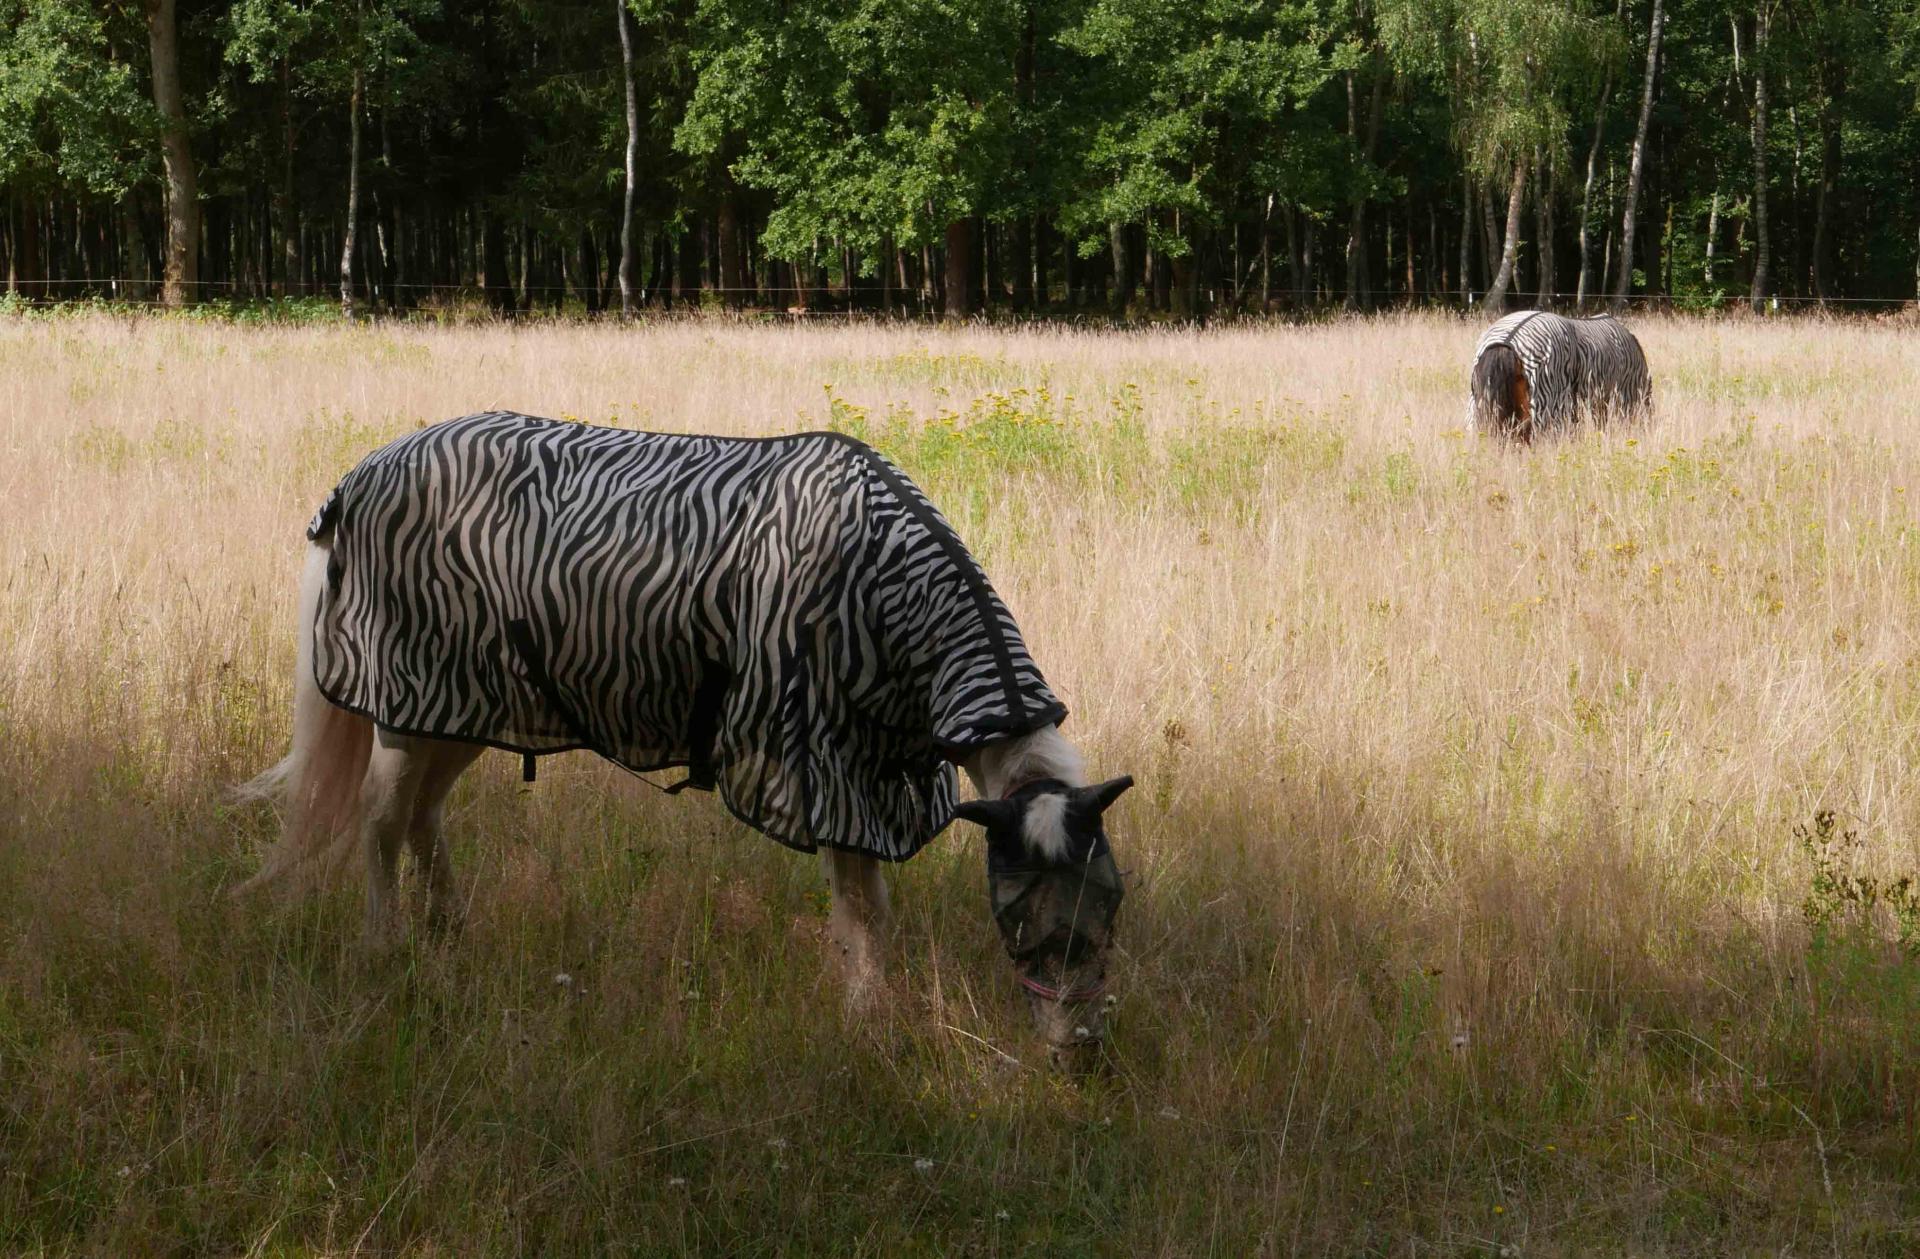 Zebras in Hasenmoor